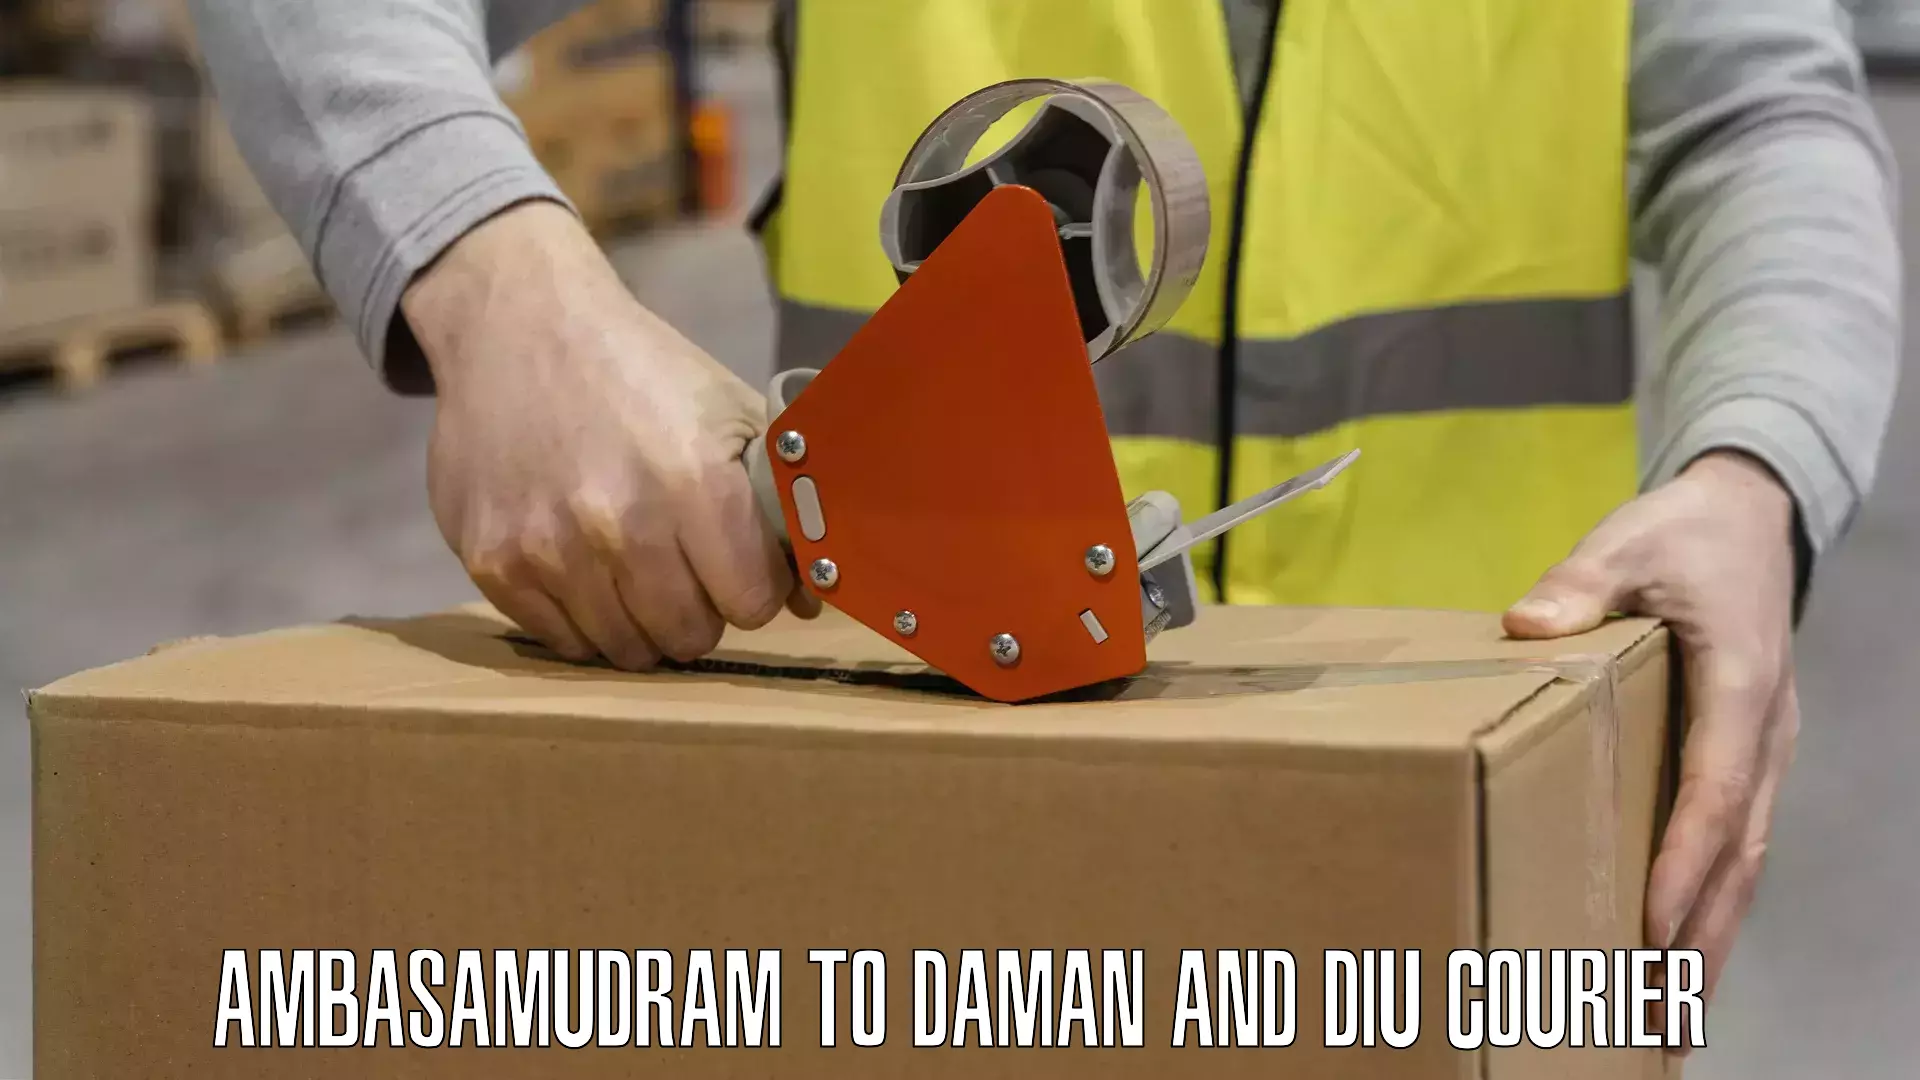 Reliable package handling Ambasamudram to Daman